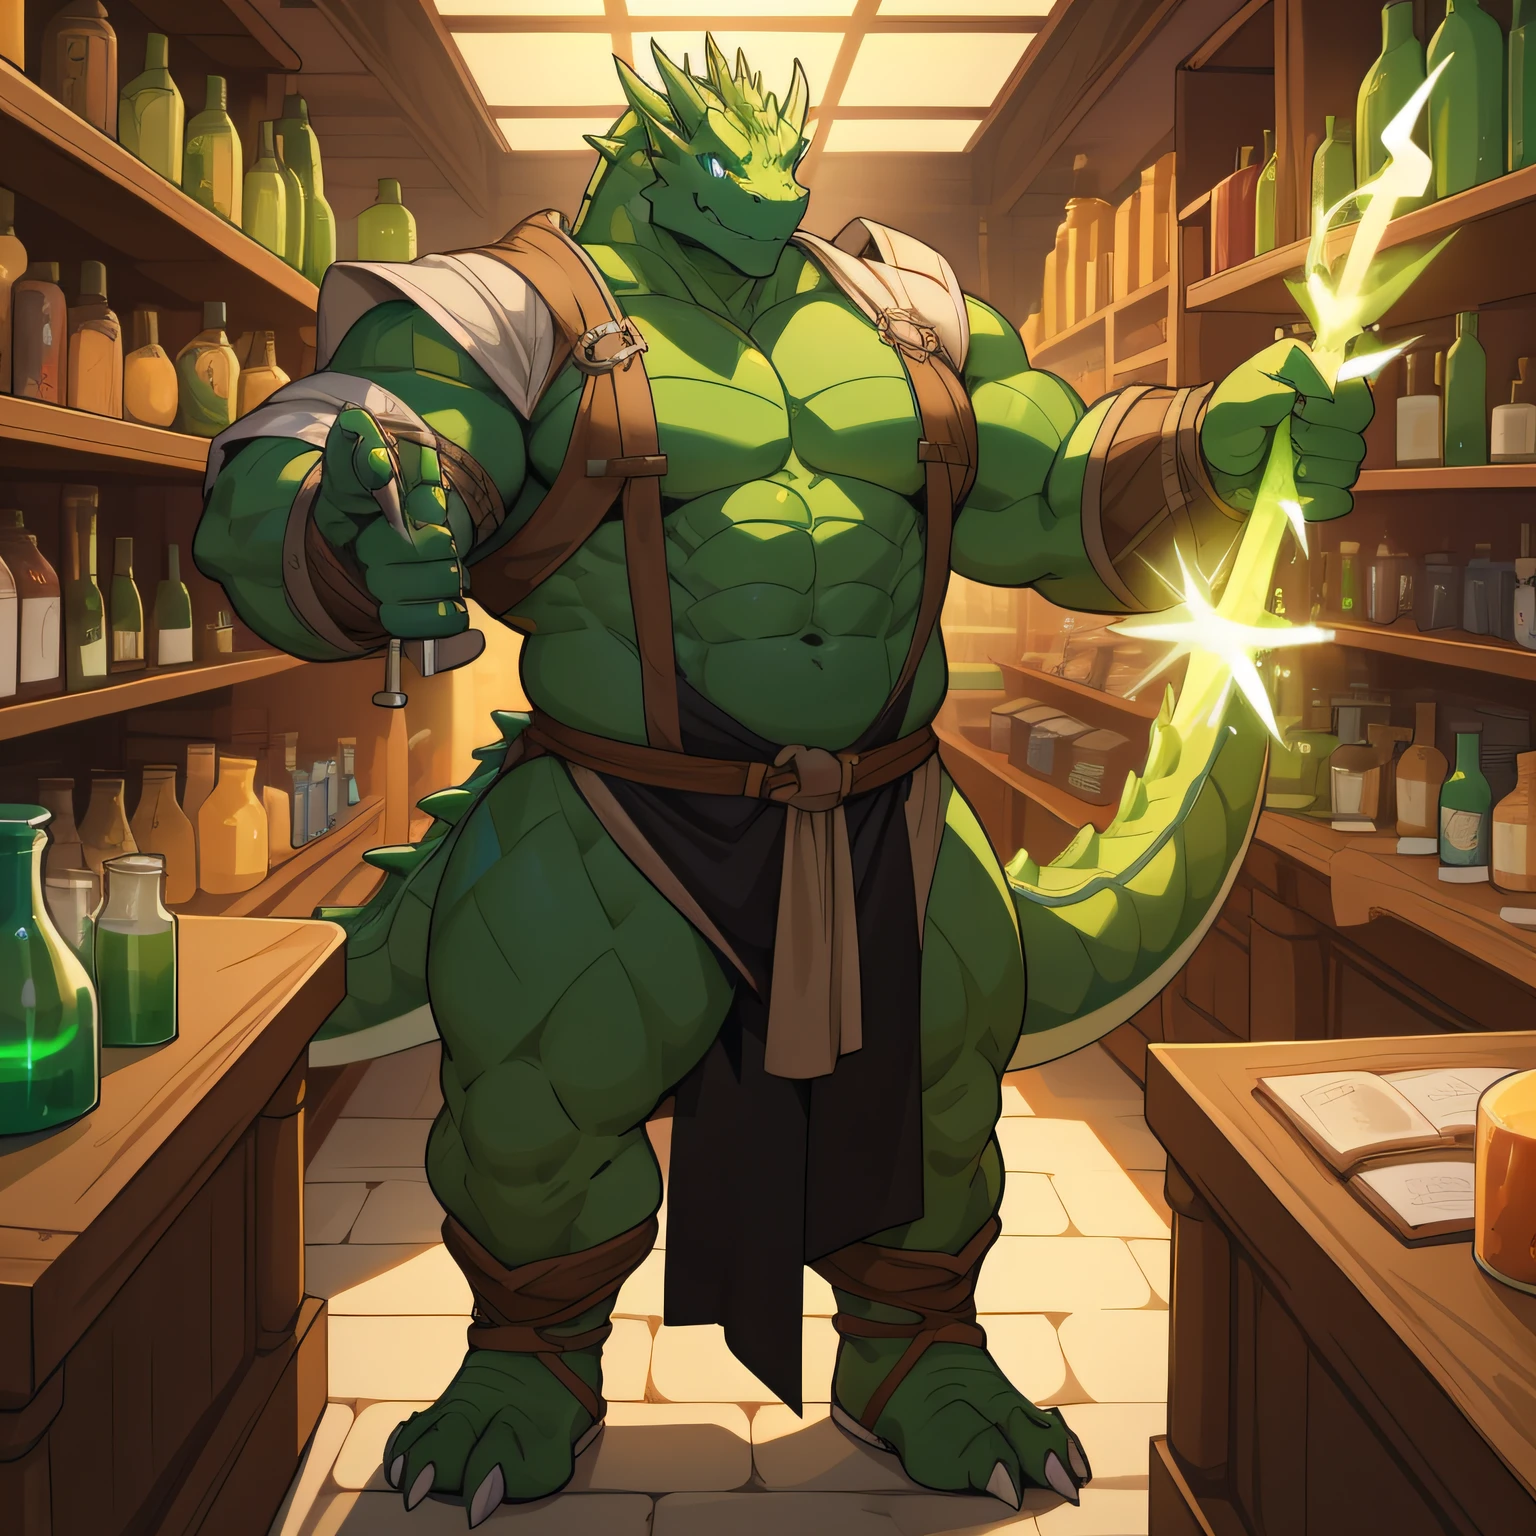 Un enorme dragón verde con ropa medieval ajustada y pectorales enormes te saluda con una sonrisa de bienvenida mientras estás en el mostrador de una tienda llena de pociones brillantes., cuerpo completo